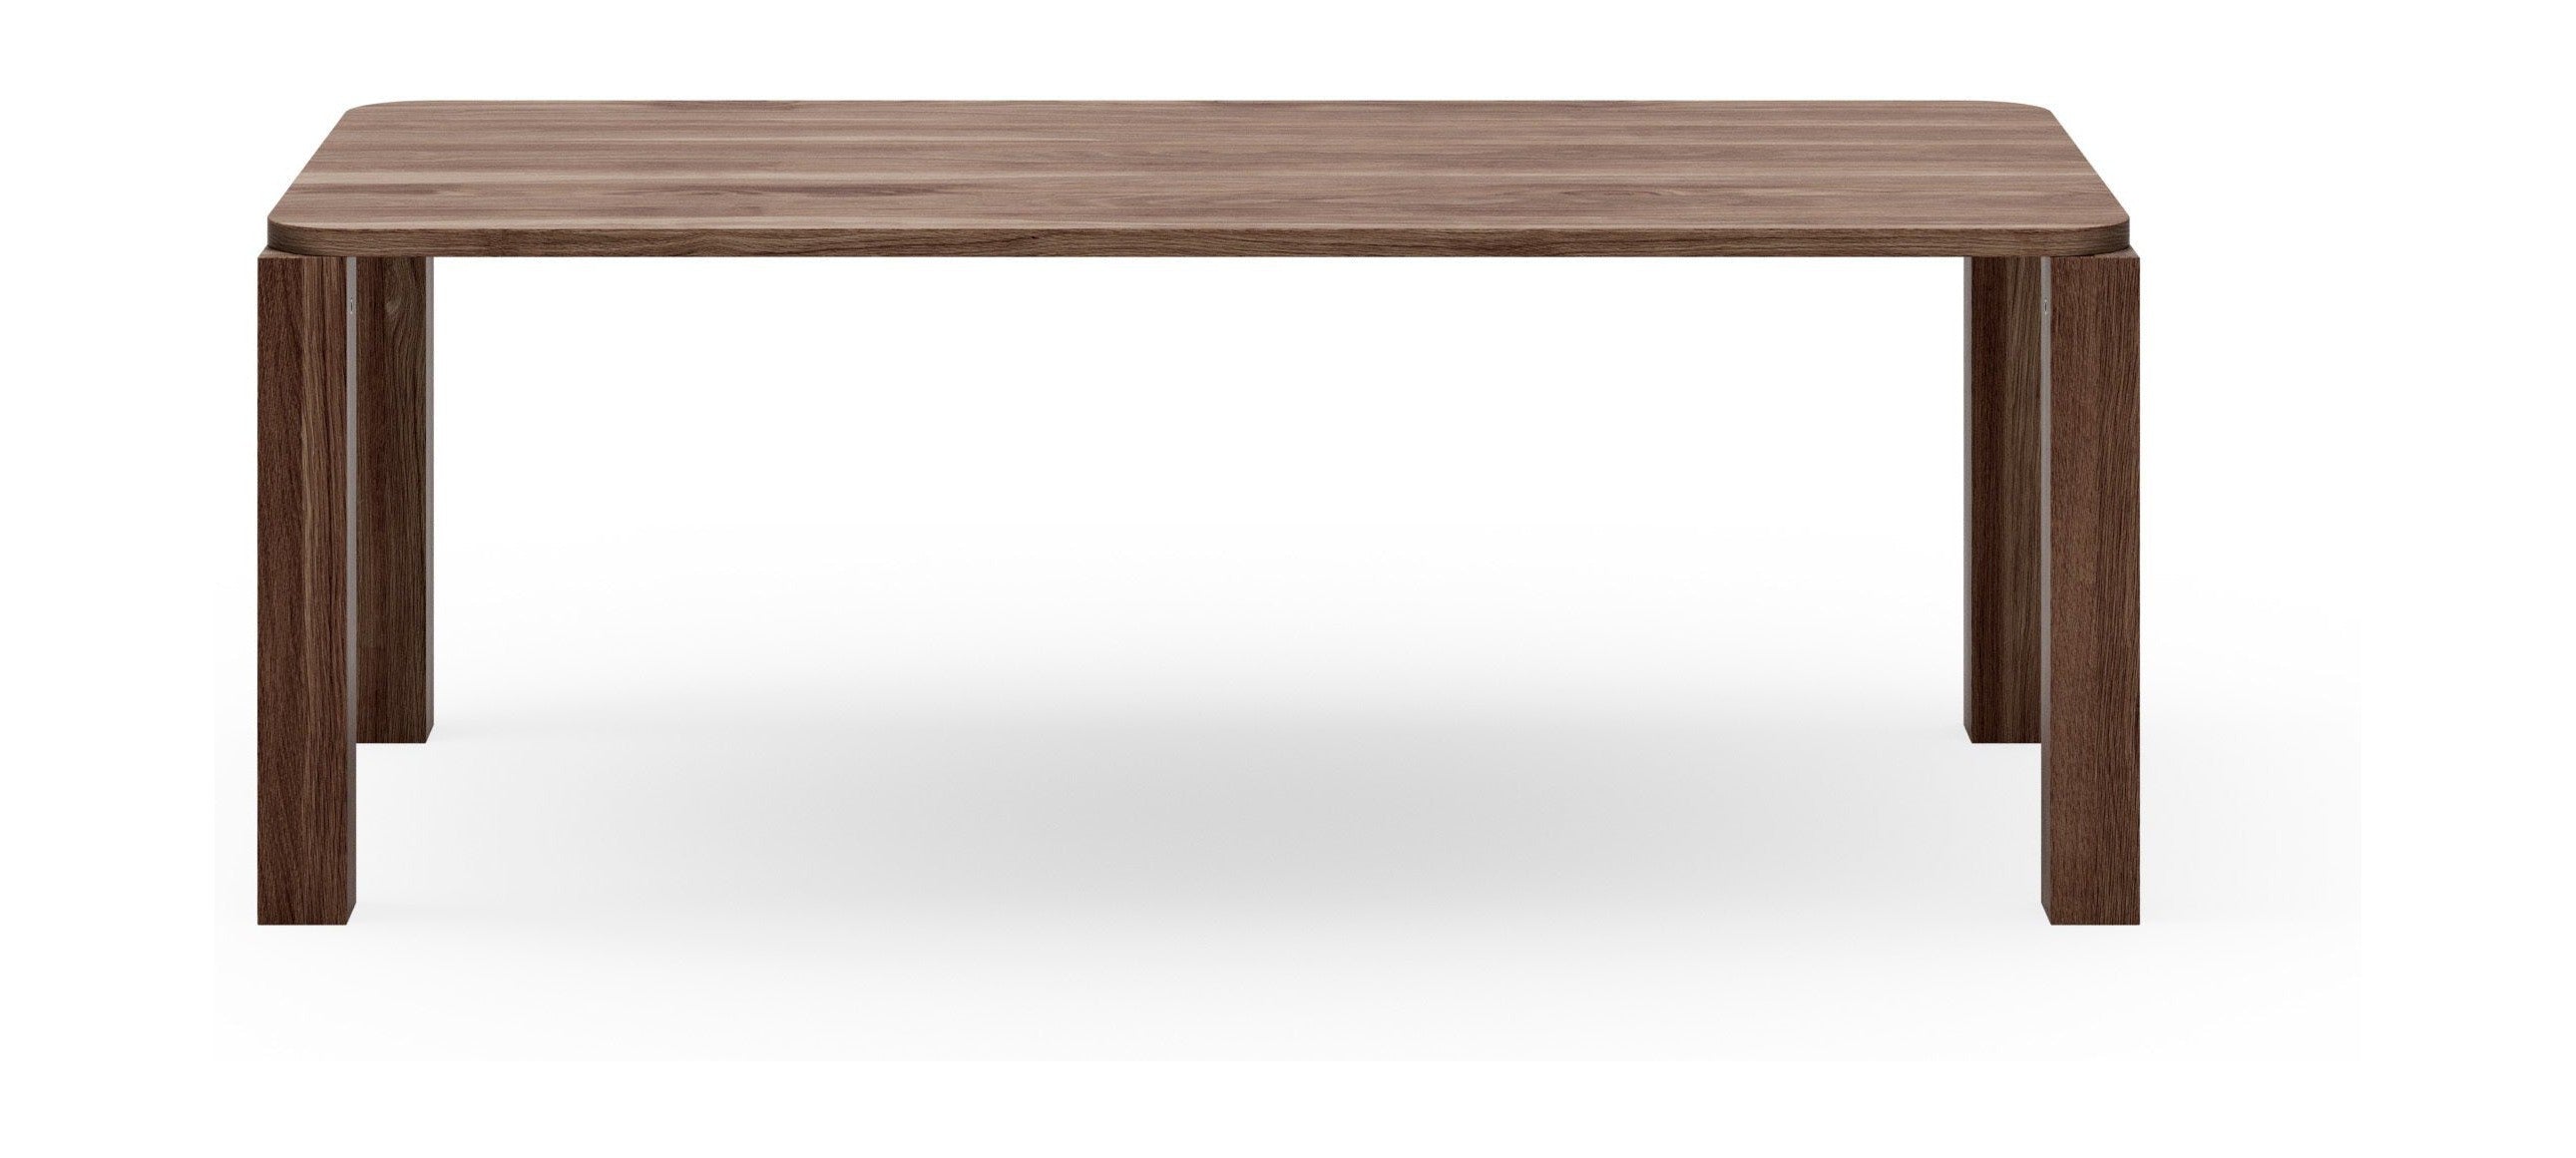 New Works Atlas Dining Table Fumed Oak, 200x95 Cm